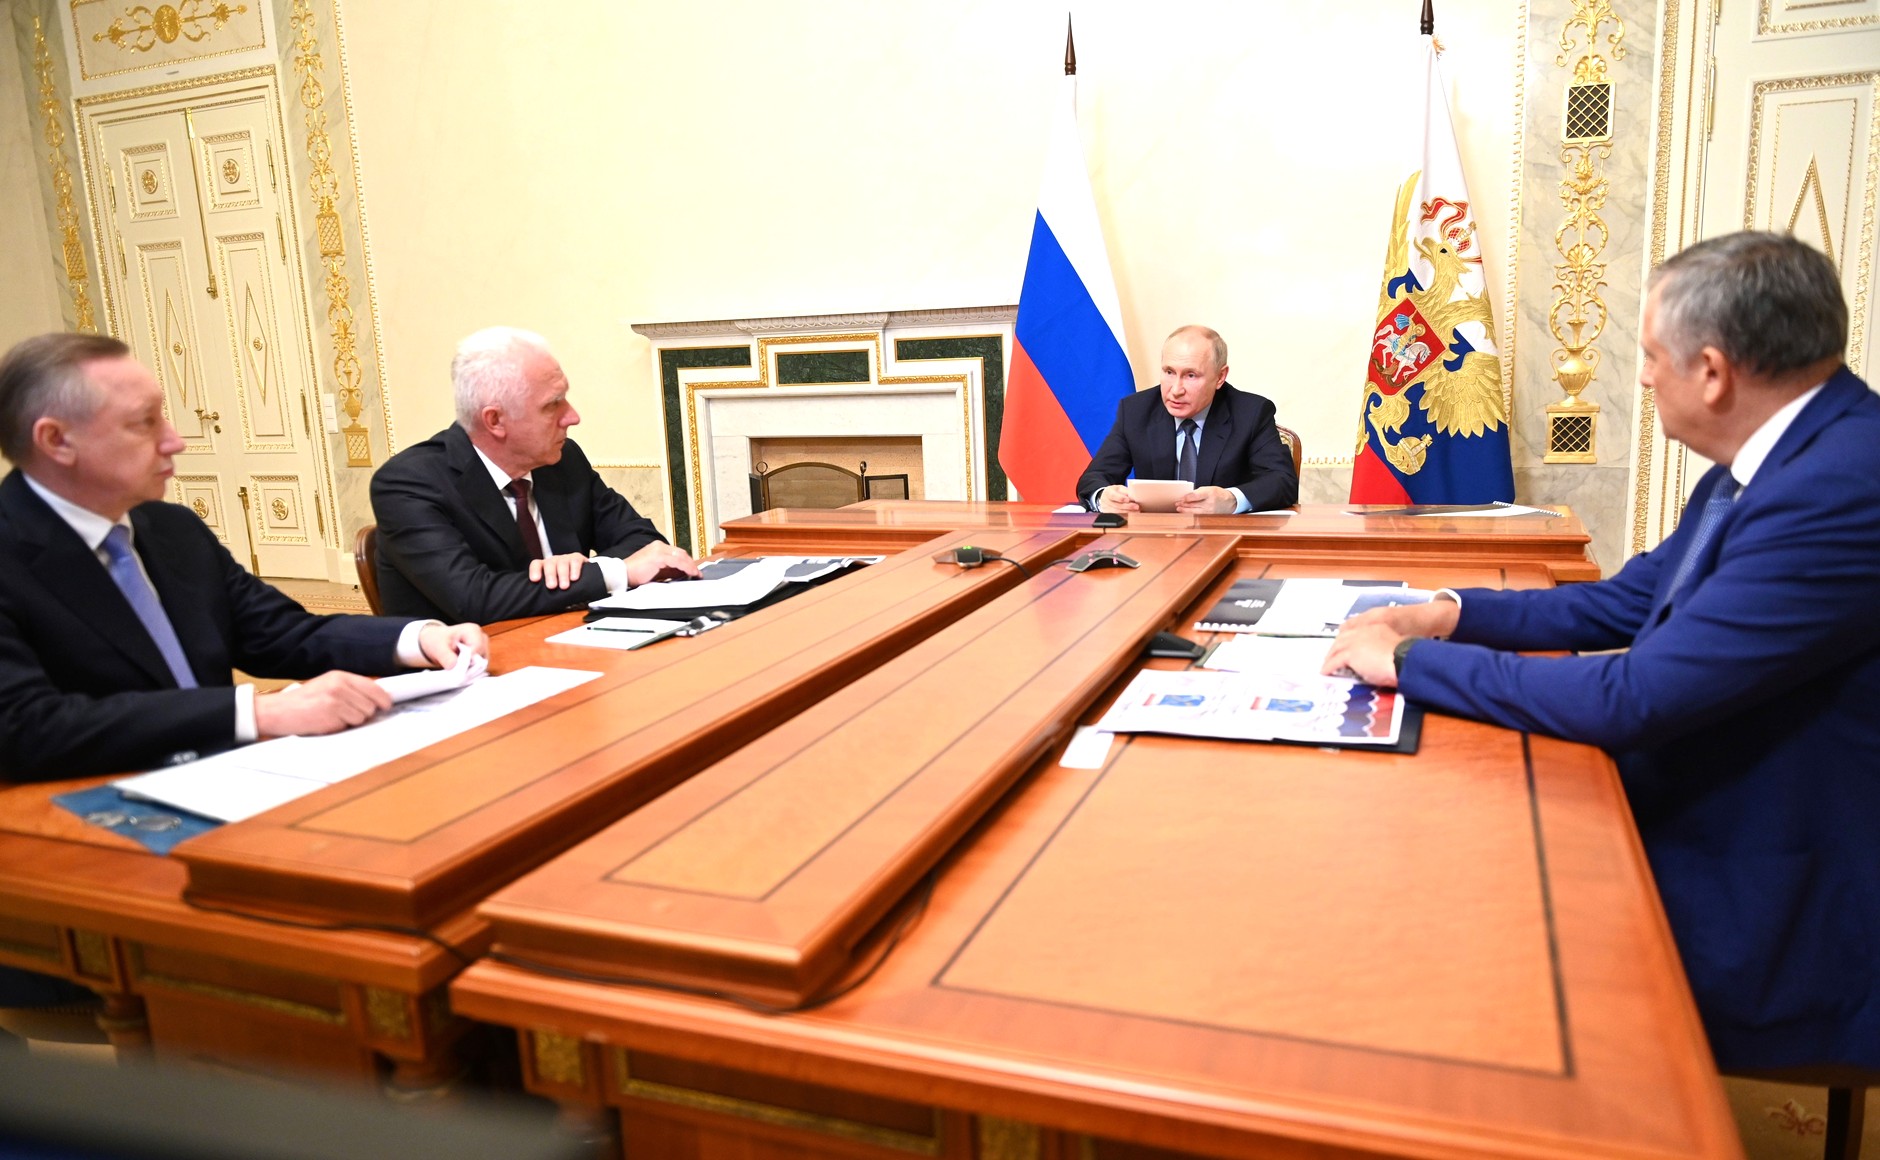 Путин обсудил развитие транспортной инфраструктуры в Санкт-Петербурге и Ленинградской области